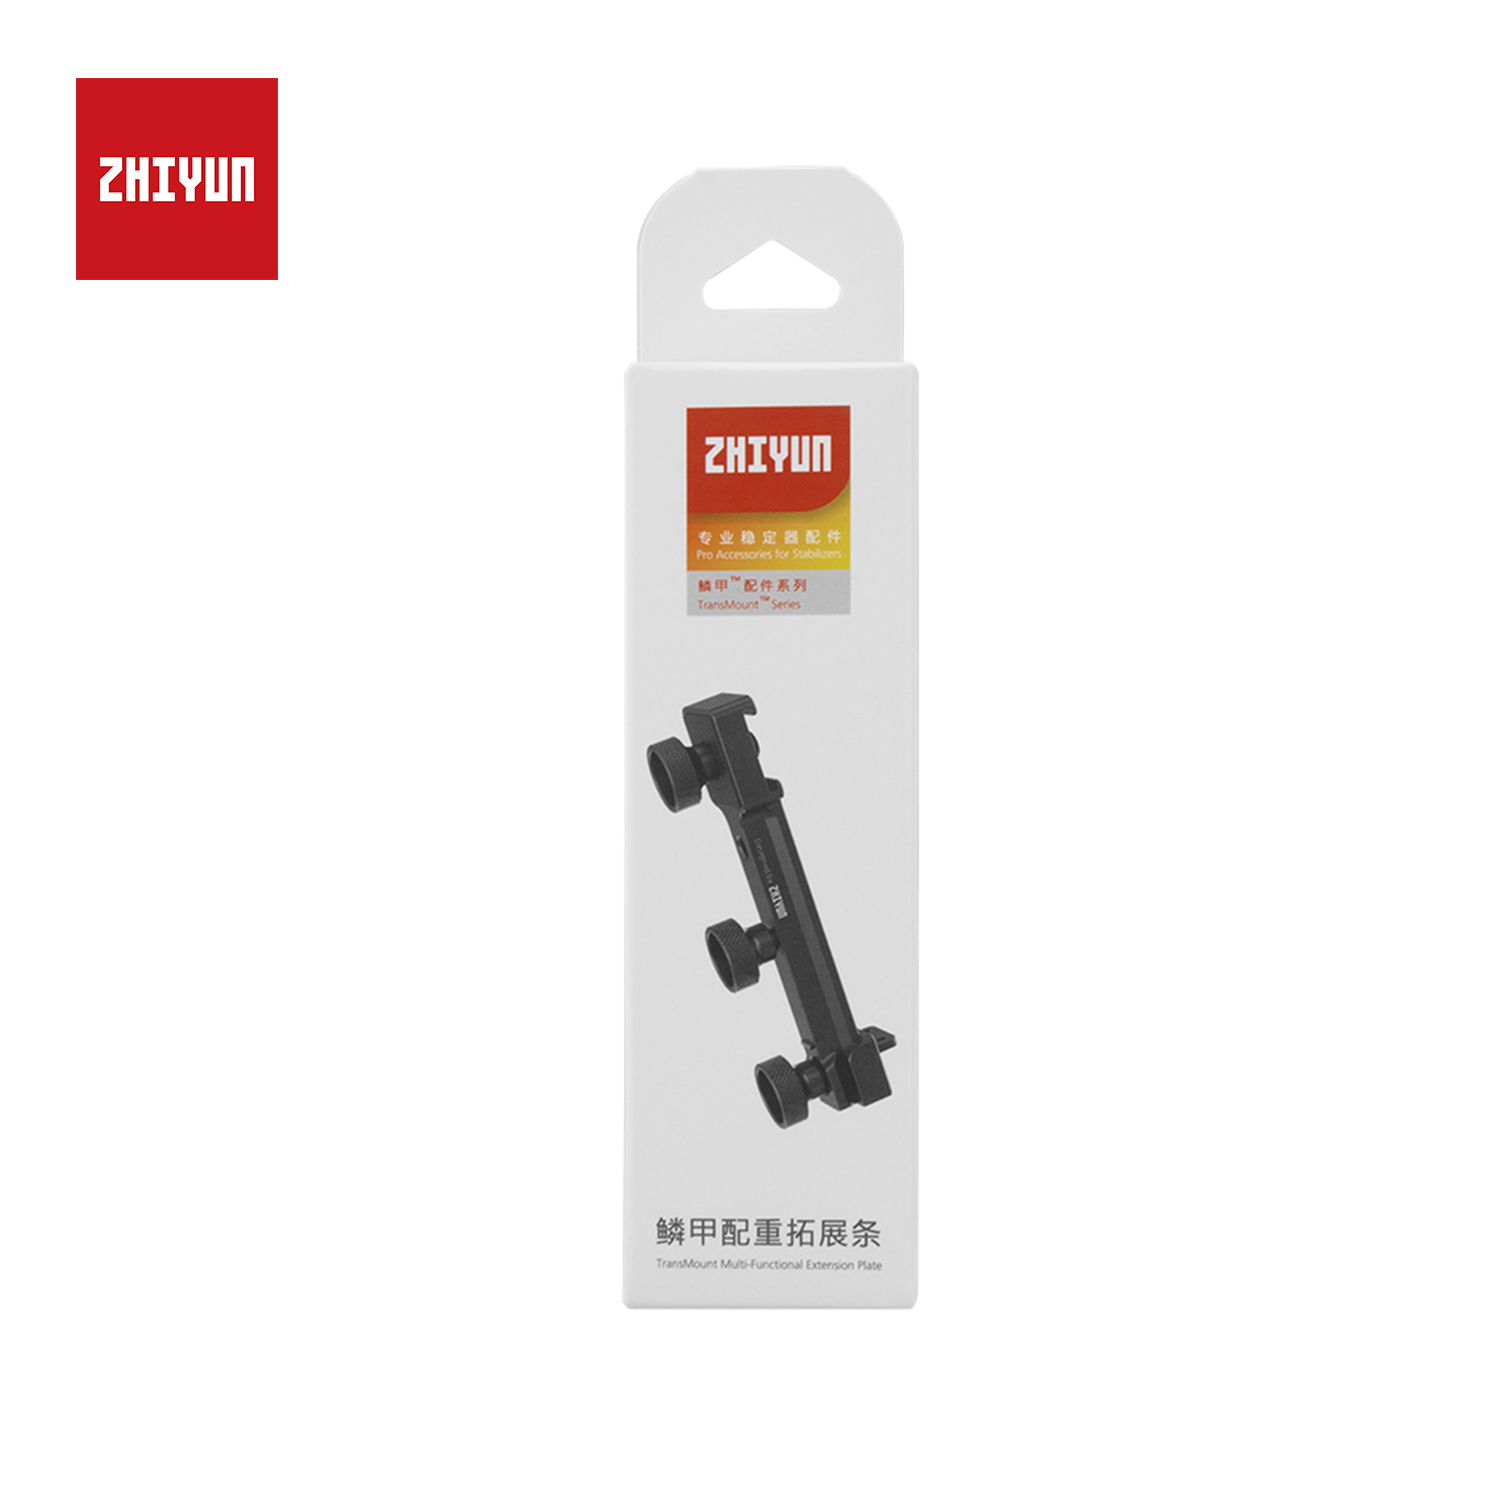 Zhiyun Officiële EX1B04 Uitbreiding Plaat Voor Weebill S Gimbal Handheld Stabilizer Accessoires